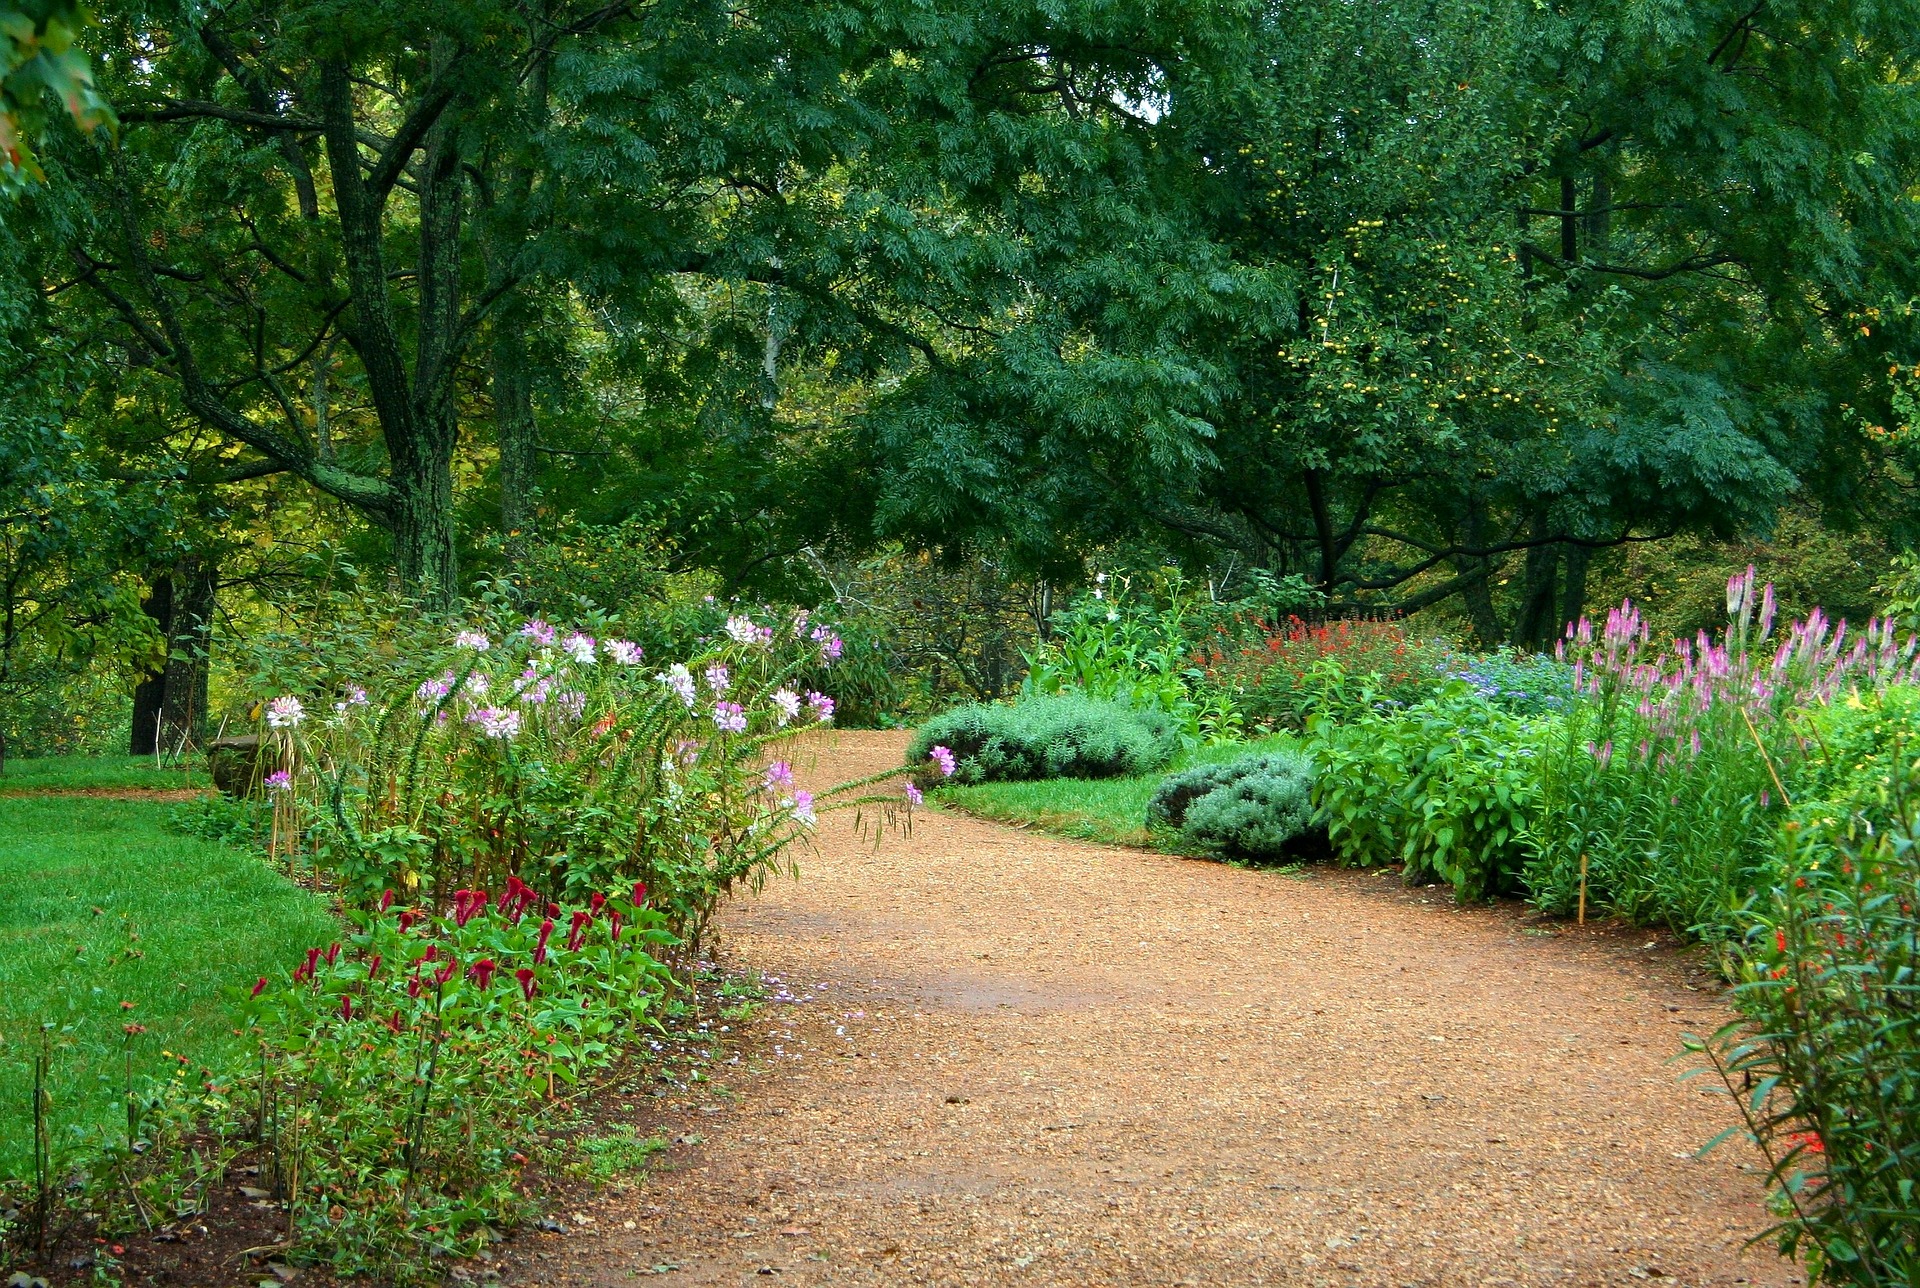 Ide të lira dhe të thjeshta për dizajnimin e kopshtit tuaj